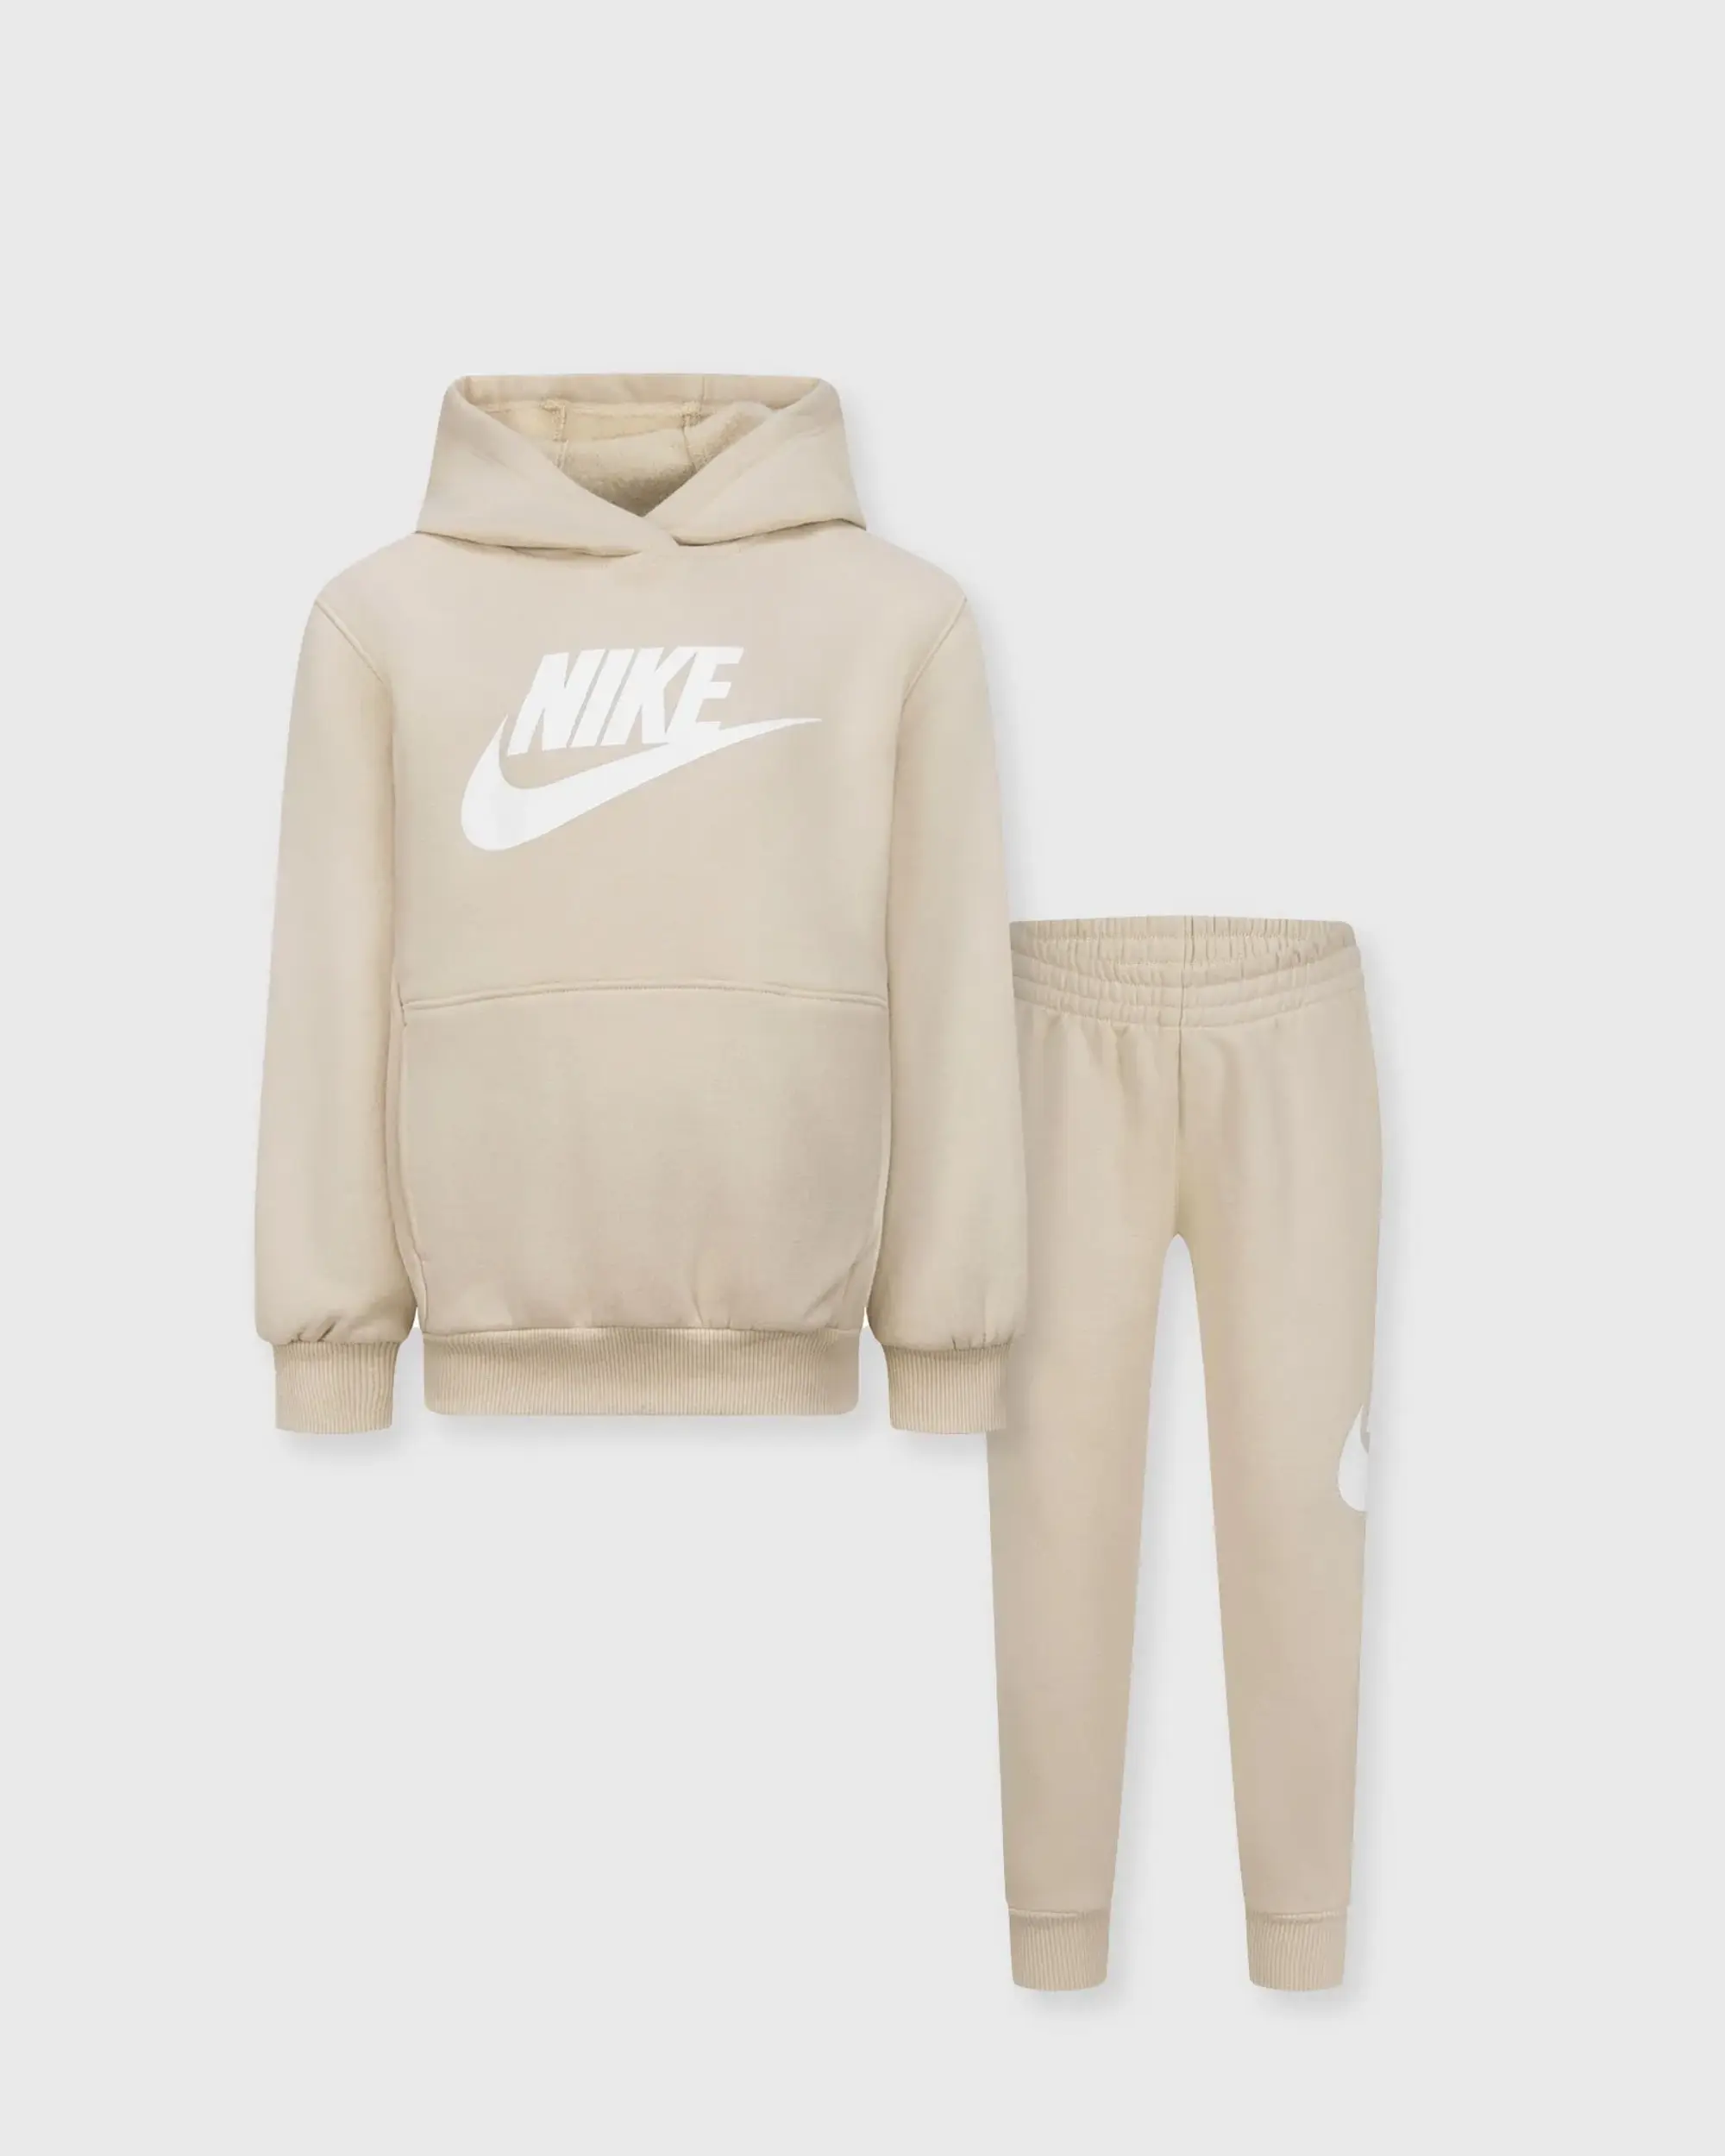 Nike Club Flc T/Suit In41 - Cream